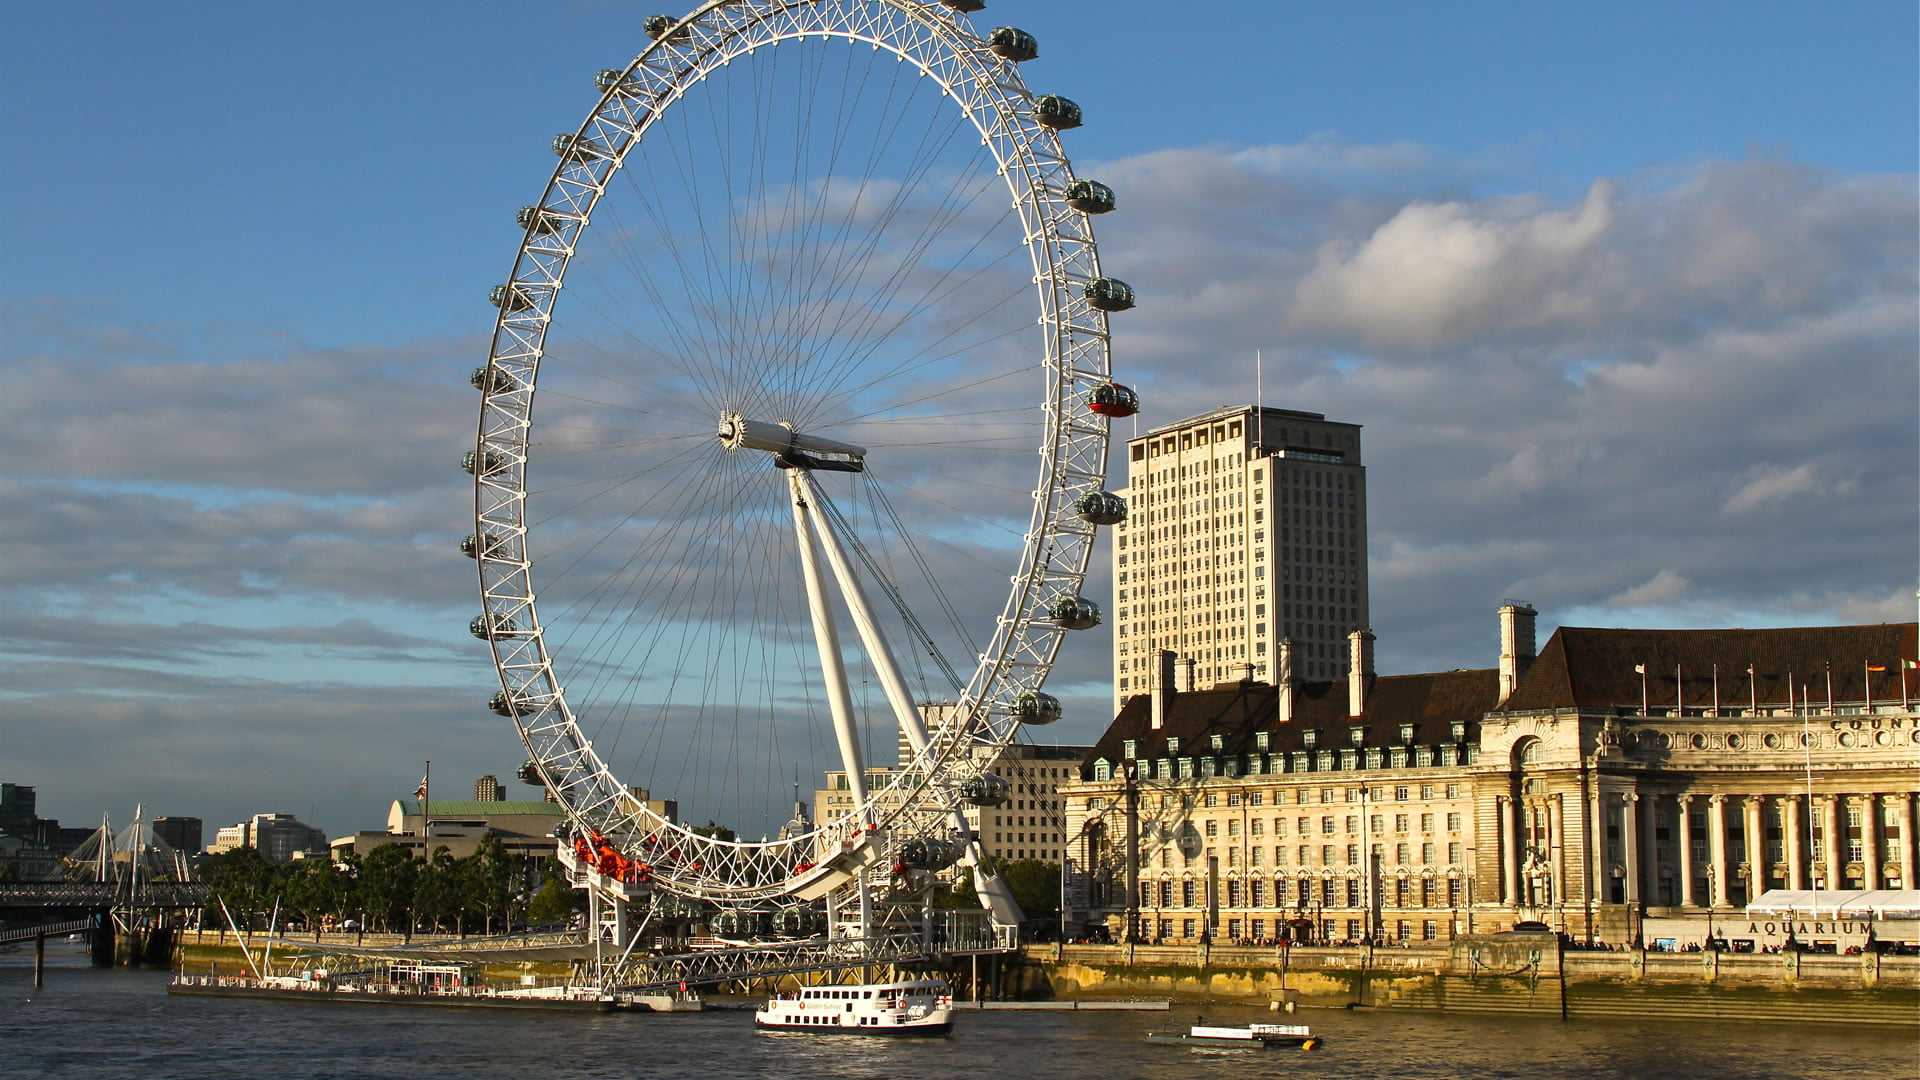 London. Достопримечательности Лондона «Лондонский глаз» (London Eye). Биг Бен и колесо обозрения в Лондоне. Достромичательности Лондон. Достопримечательности Londona.